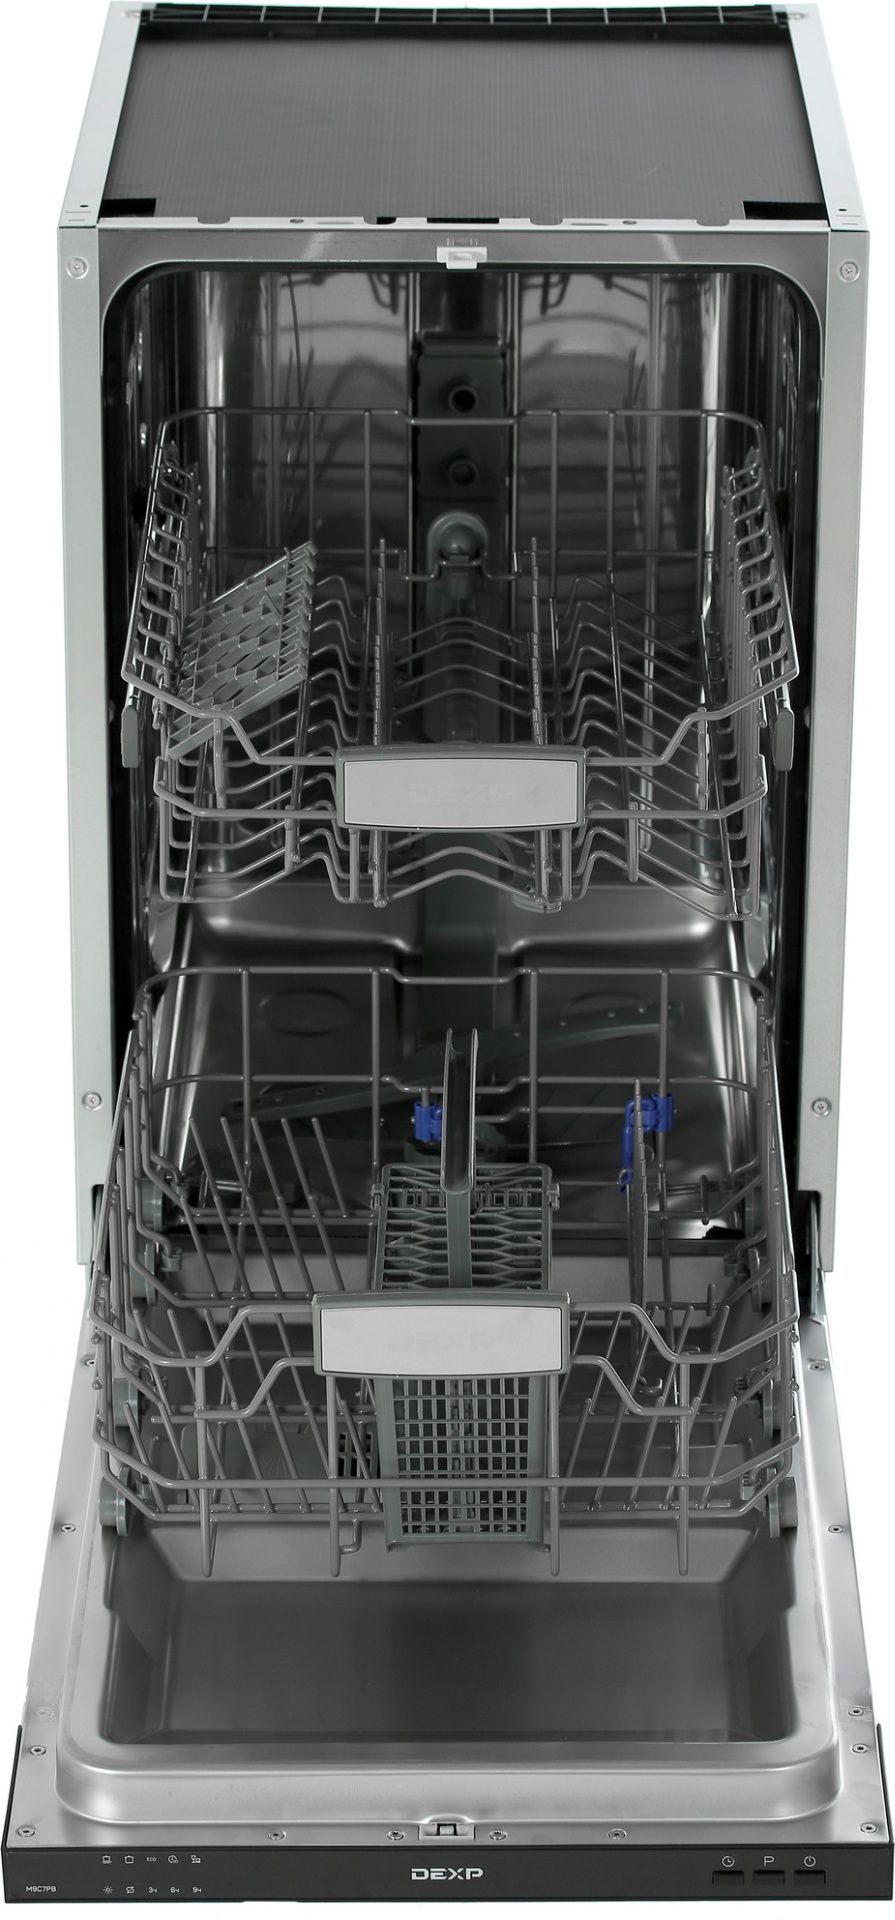 Посудомоечная машина dexp m9c7pd. Встраиваемая посудомоечная машина DEXP m9c7pb. Посудомойка дексп 45 встраиваемая. Посудомоечная машина DEXP m6d7pf серый. Запчасти для Flavia bi 45 IVELA Light.